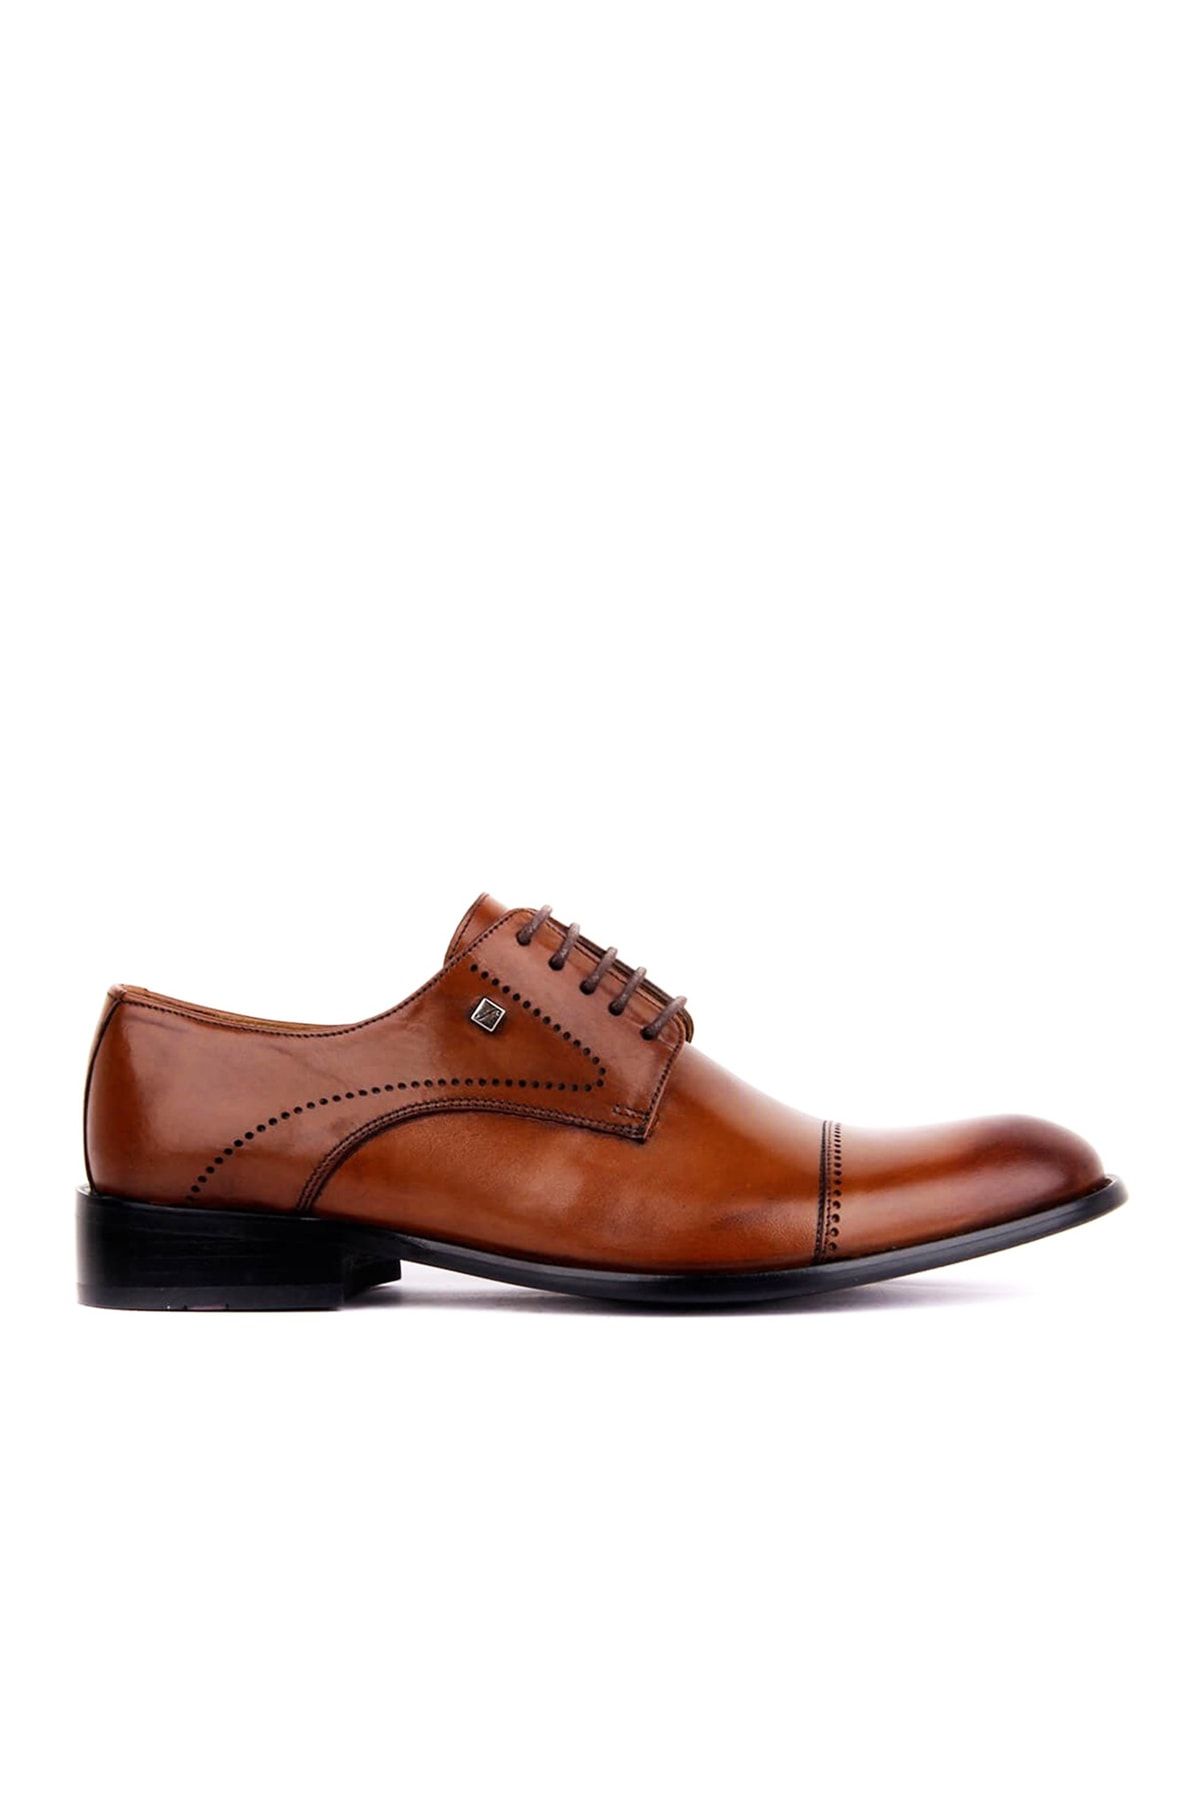 Fosco Fsc-5045 Taba Erkek Çift Yüz Bağlı Yuvarlak Burunlu Klasik Ayakkabı